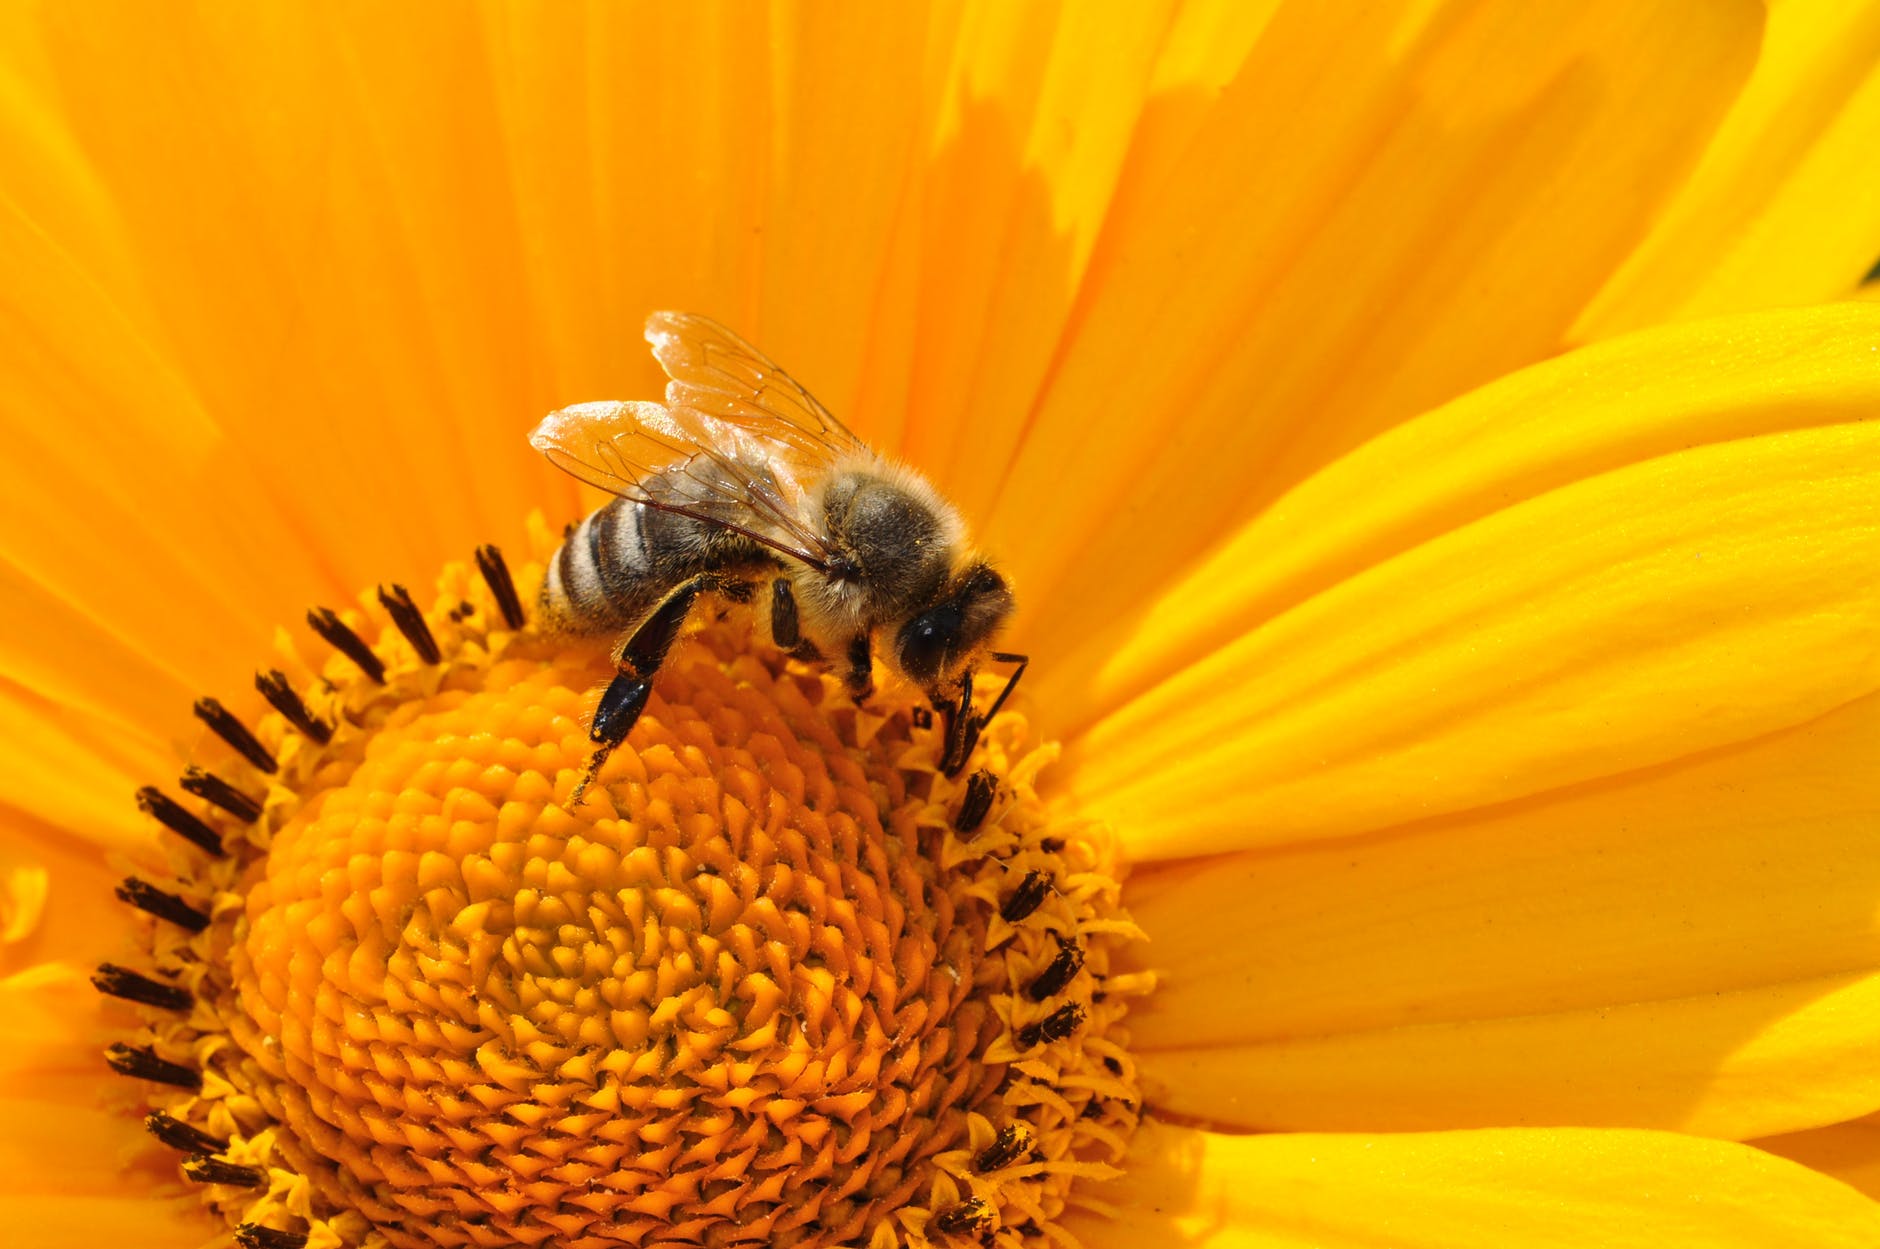 bee gathering pollen